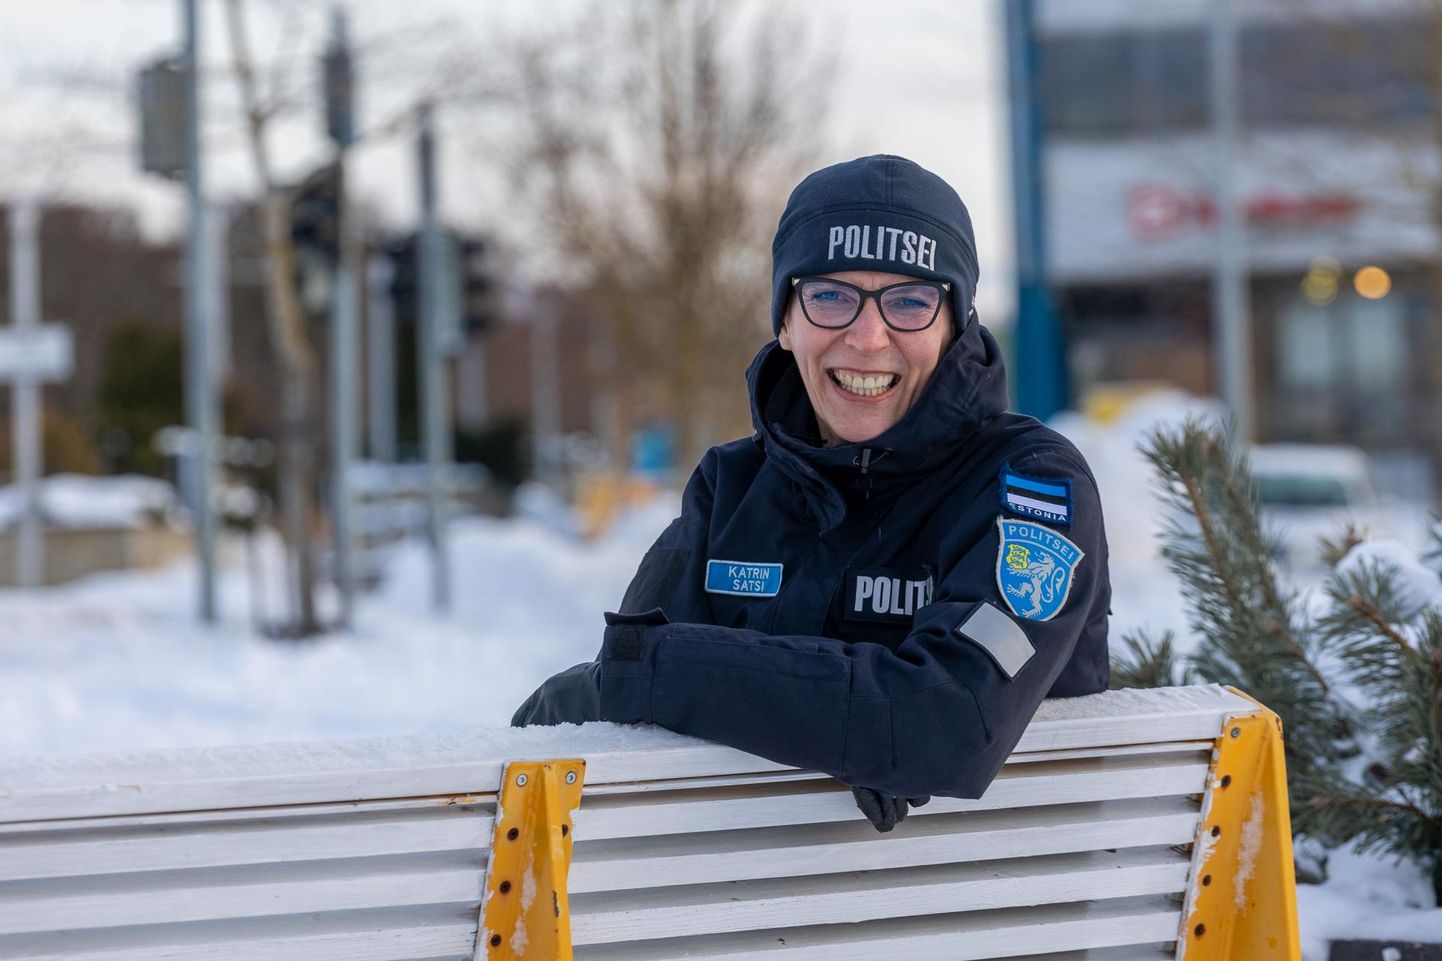 Maakonna politseijuhi Katrin Satsi sõnul võtsid korrakaitsjad eelmisel aastal põhjalikult ette Rakvere promenaadi, kus noored armastasid korda rikkuda.